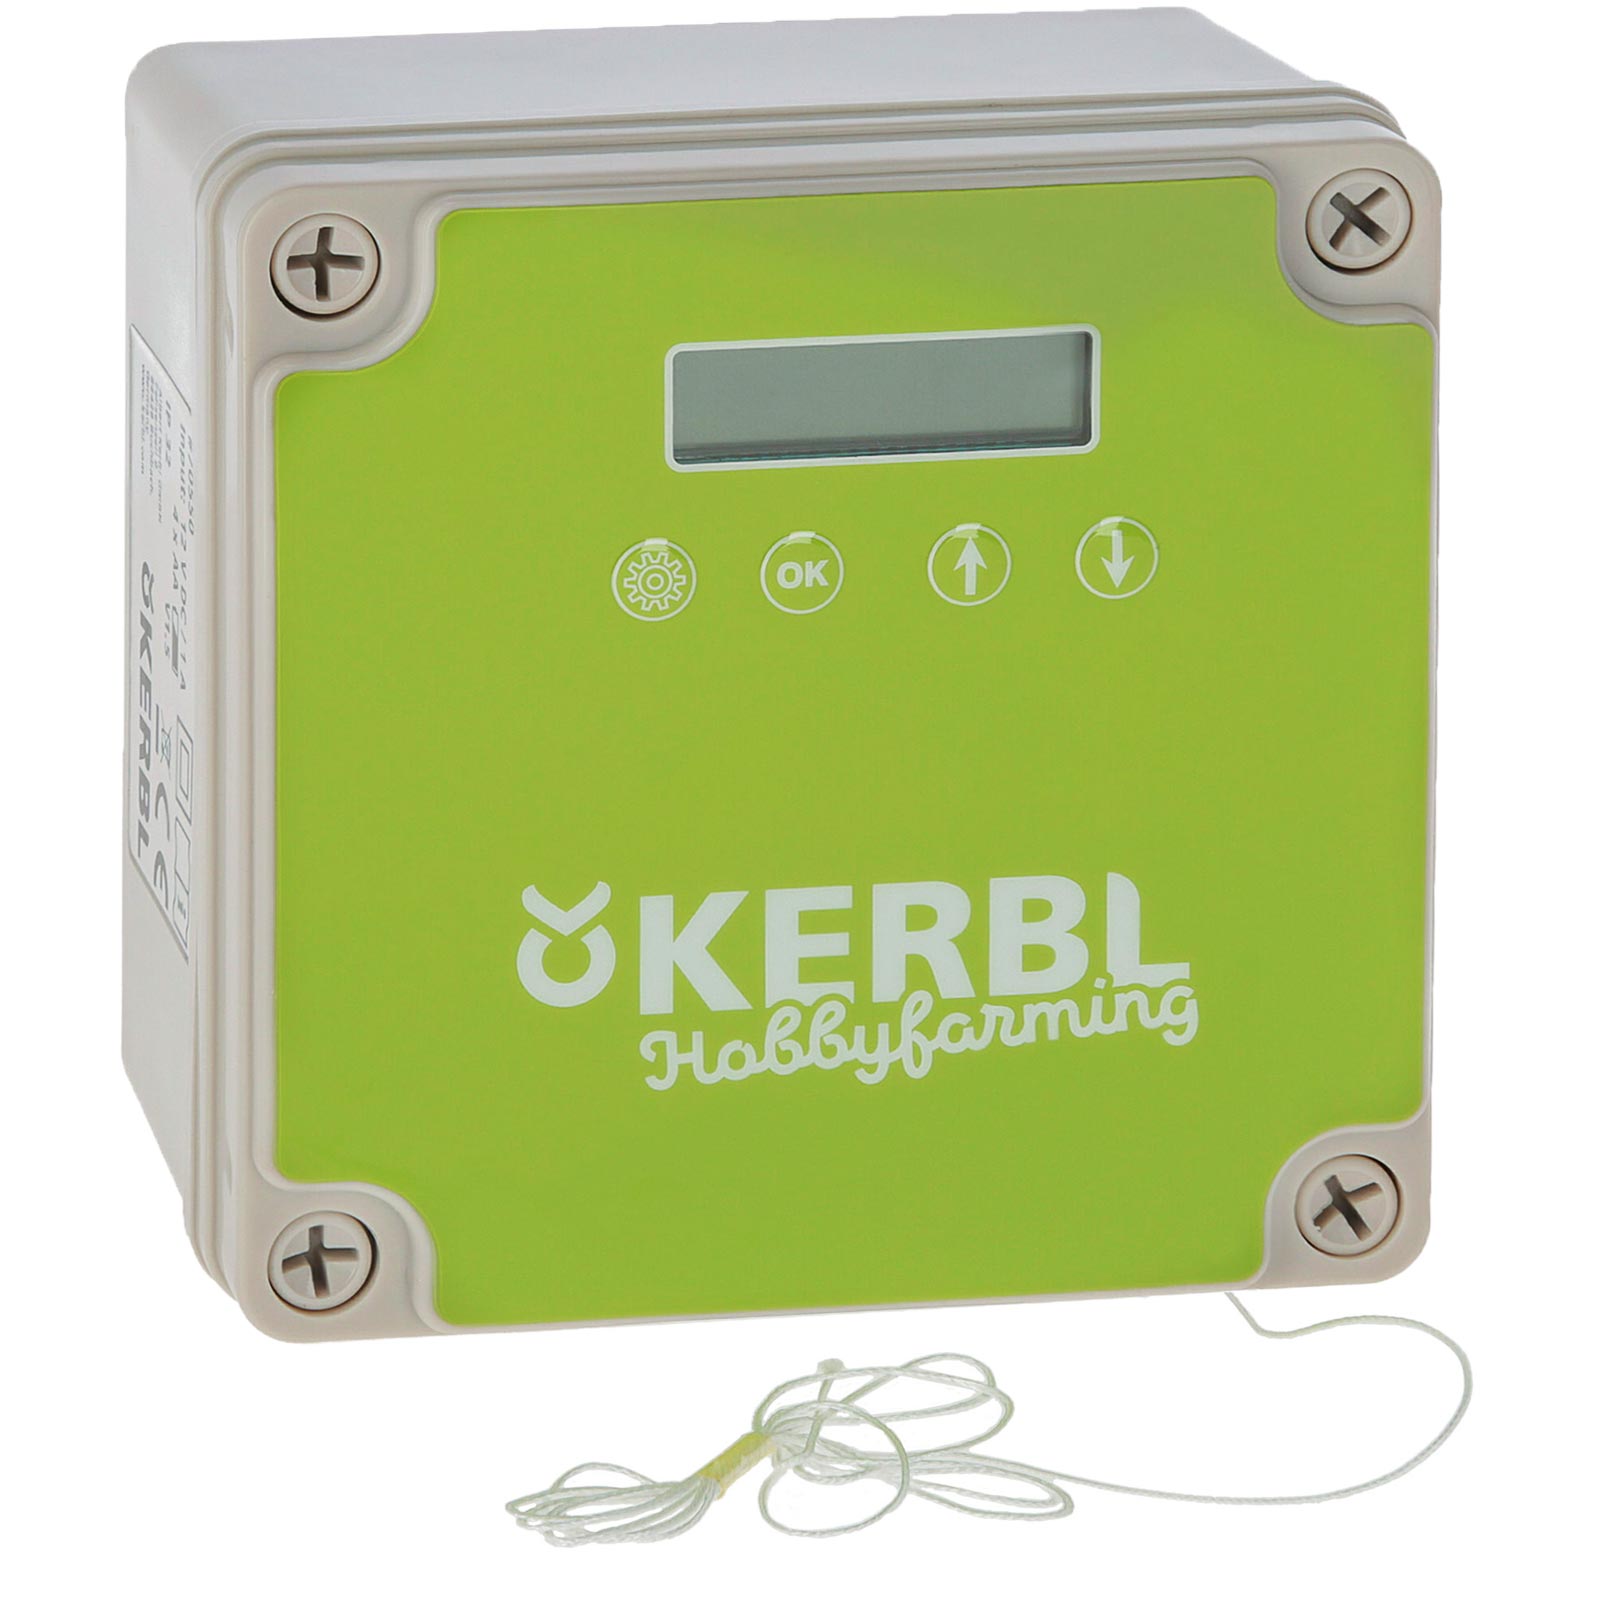 Kerbl ușă automată cu energie solară pentru coteț păsări